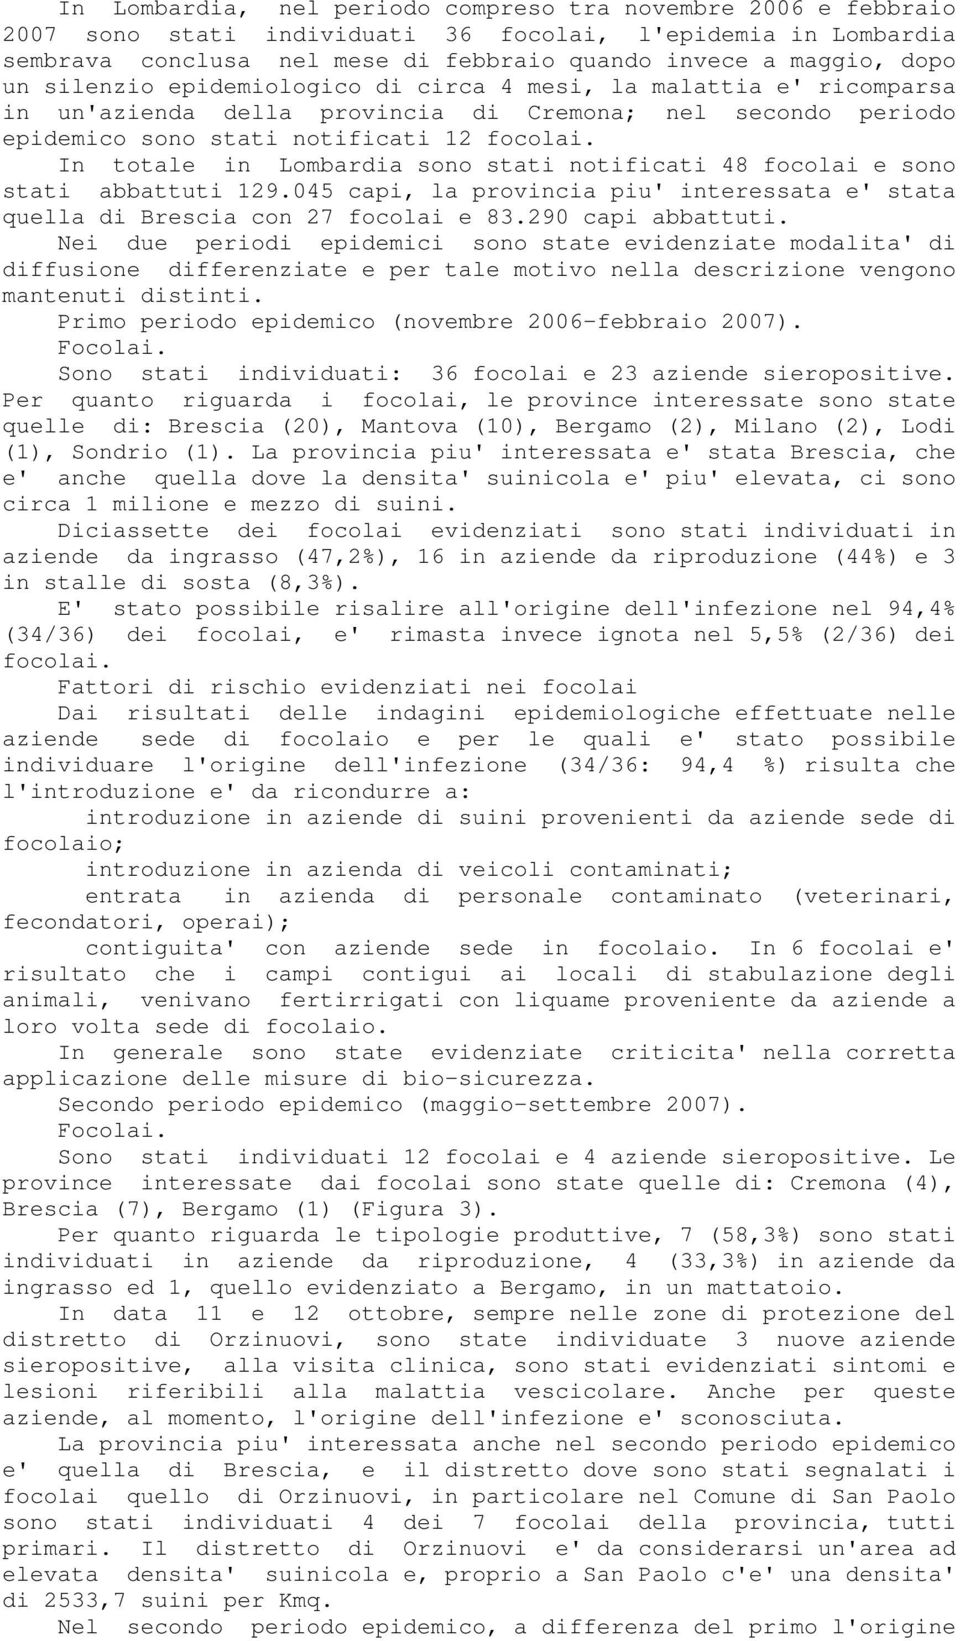 In totale in Lombardia sono stati notificati 48 focolai e sono stati abbattuti 129.045 capi, la provincia piu' interessata e' stata quella di Brescia con 27 focolai e 83.290 capi abbattuti.